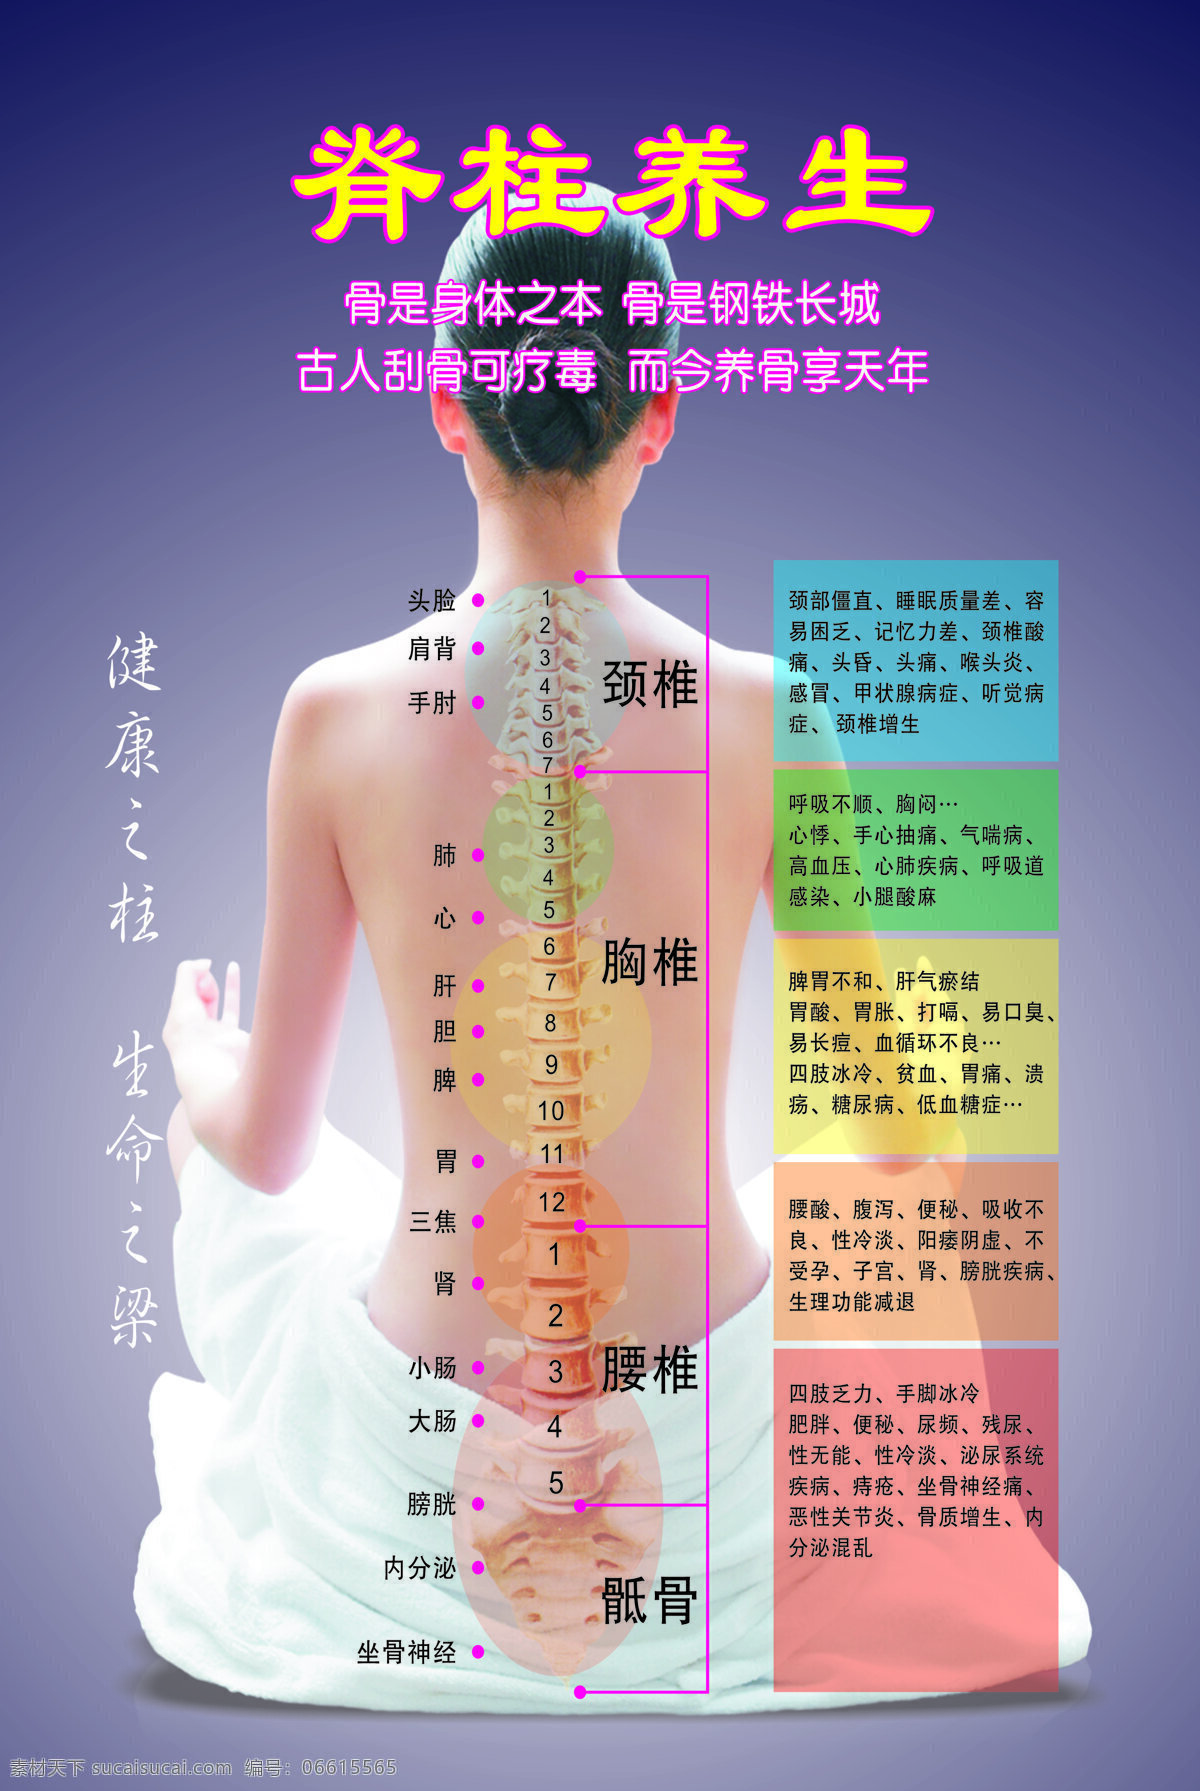 脊柱养生 脊柱 养生 健康 广告 海报 彩页 平面设计 生命